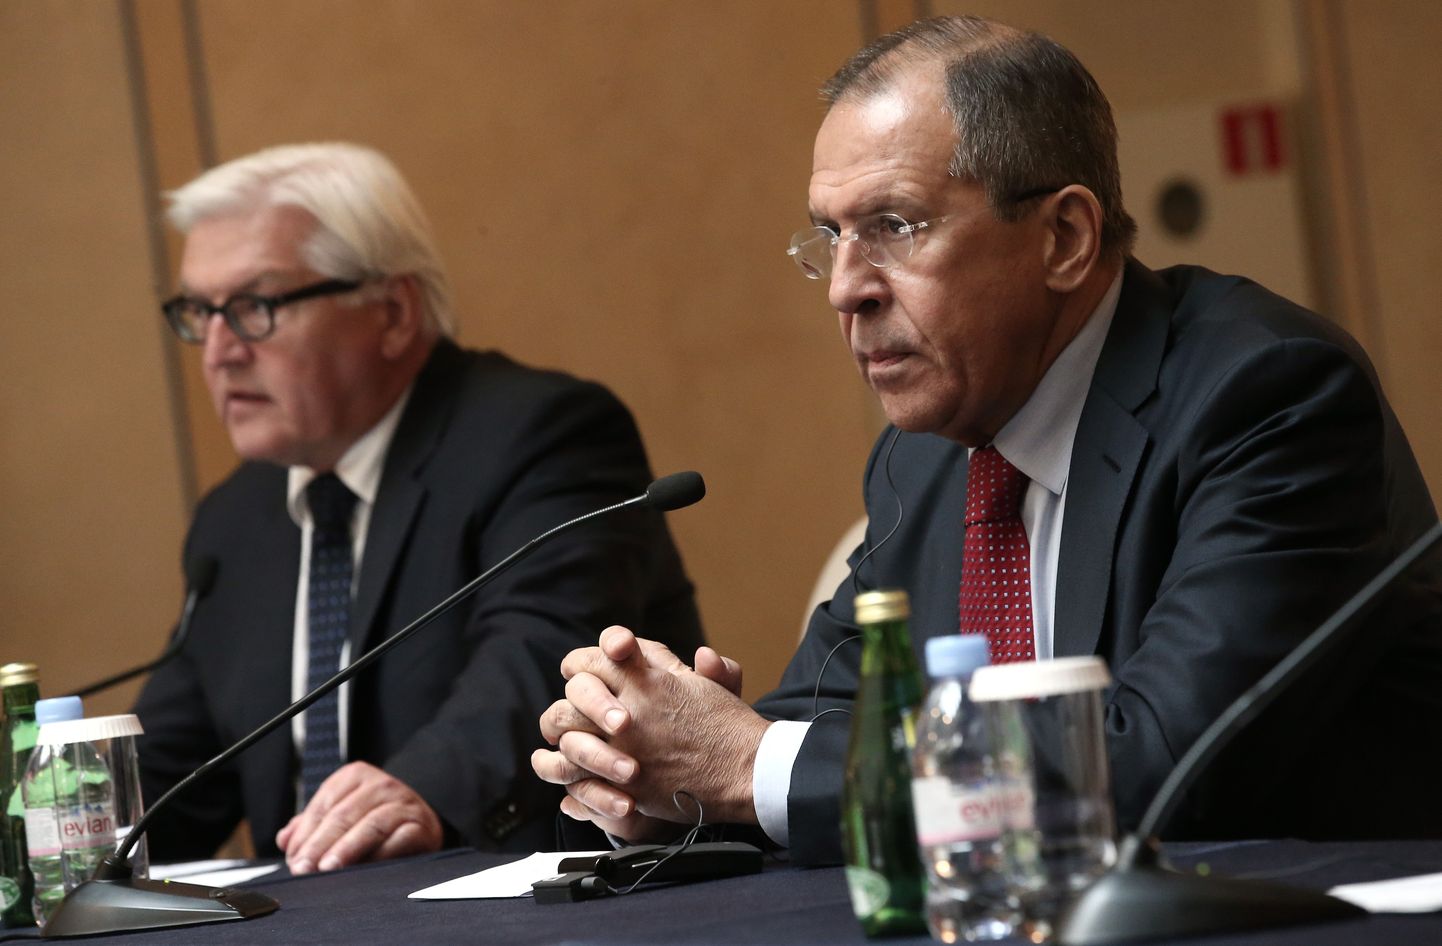 Saksa välisminister Frank Walter Steinmeier (vasakul) ja Vene esidiplomaat Sergei Lavrov.